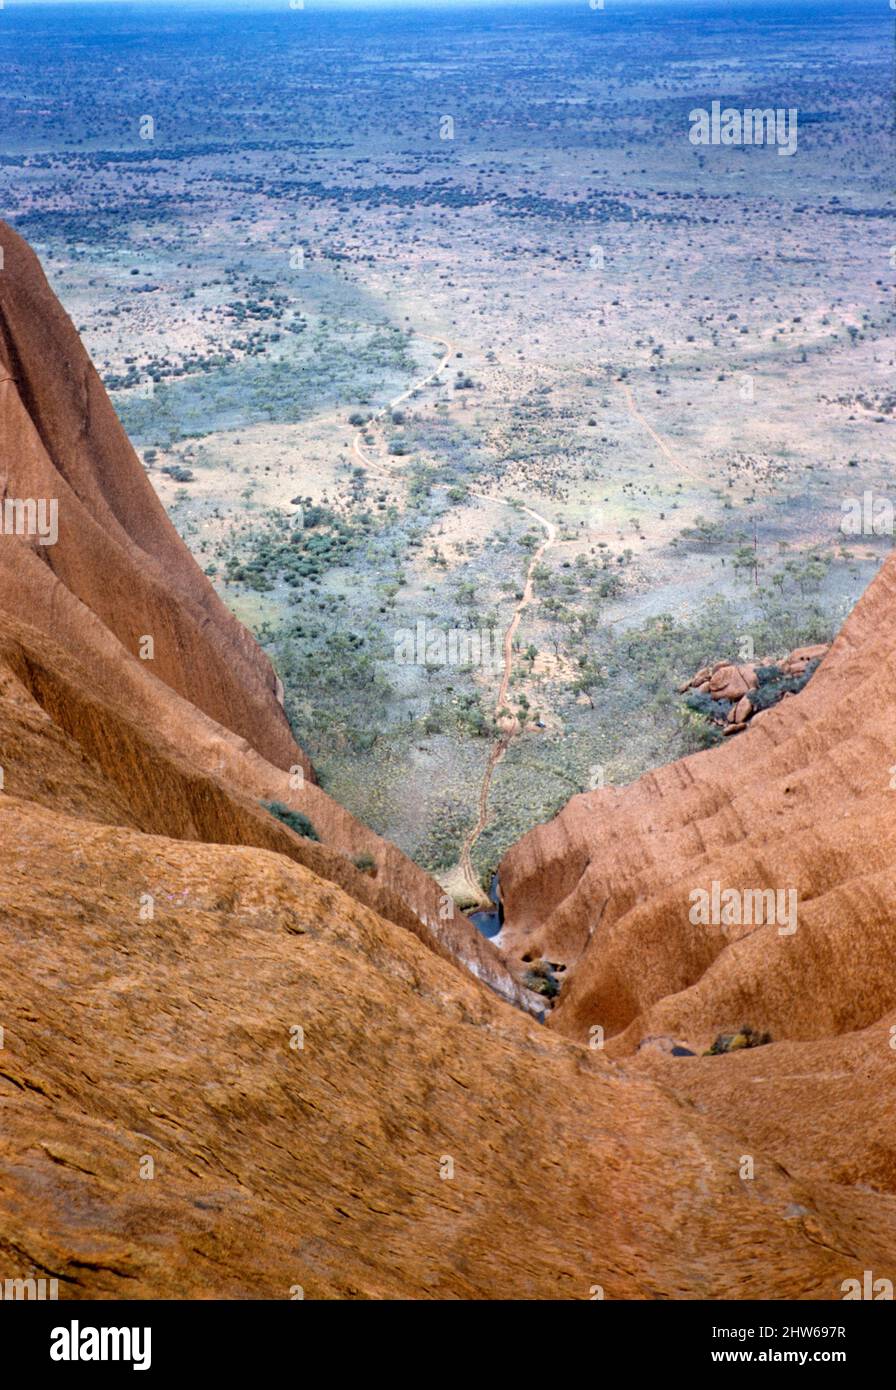 Melbourne Grammar School Expedition, Northern Territory, Australien im Jahr 1956 Blick auf erodierte Wasserfall-Schlucht zu landen unten Stockfoto